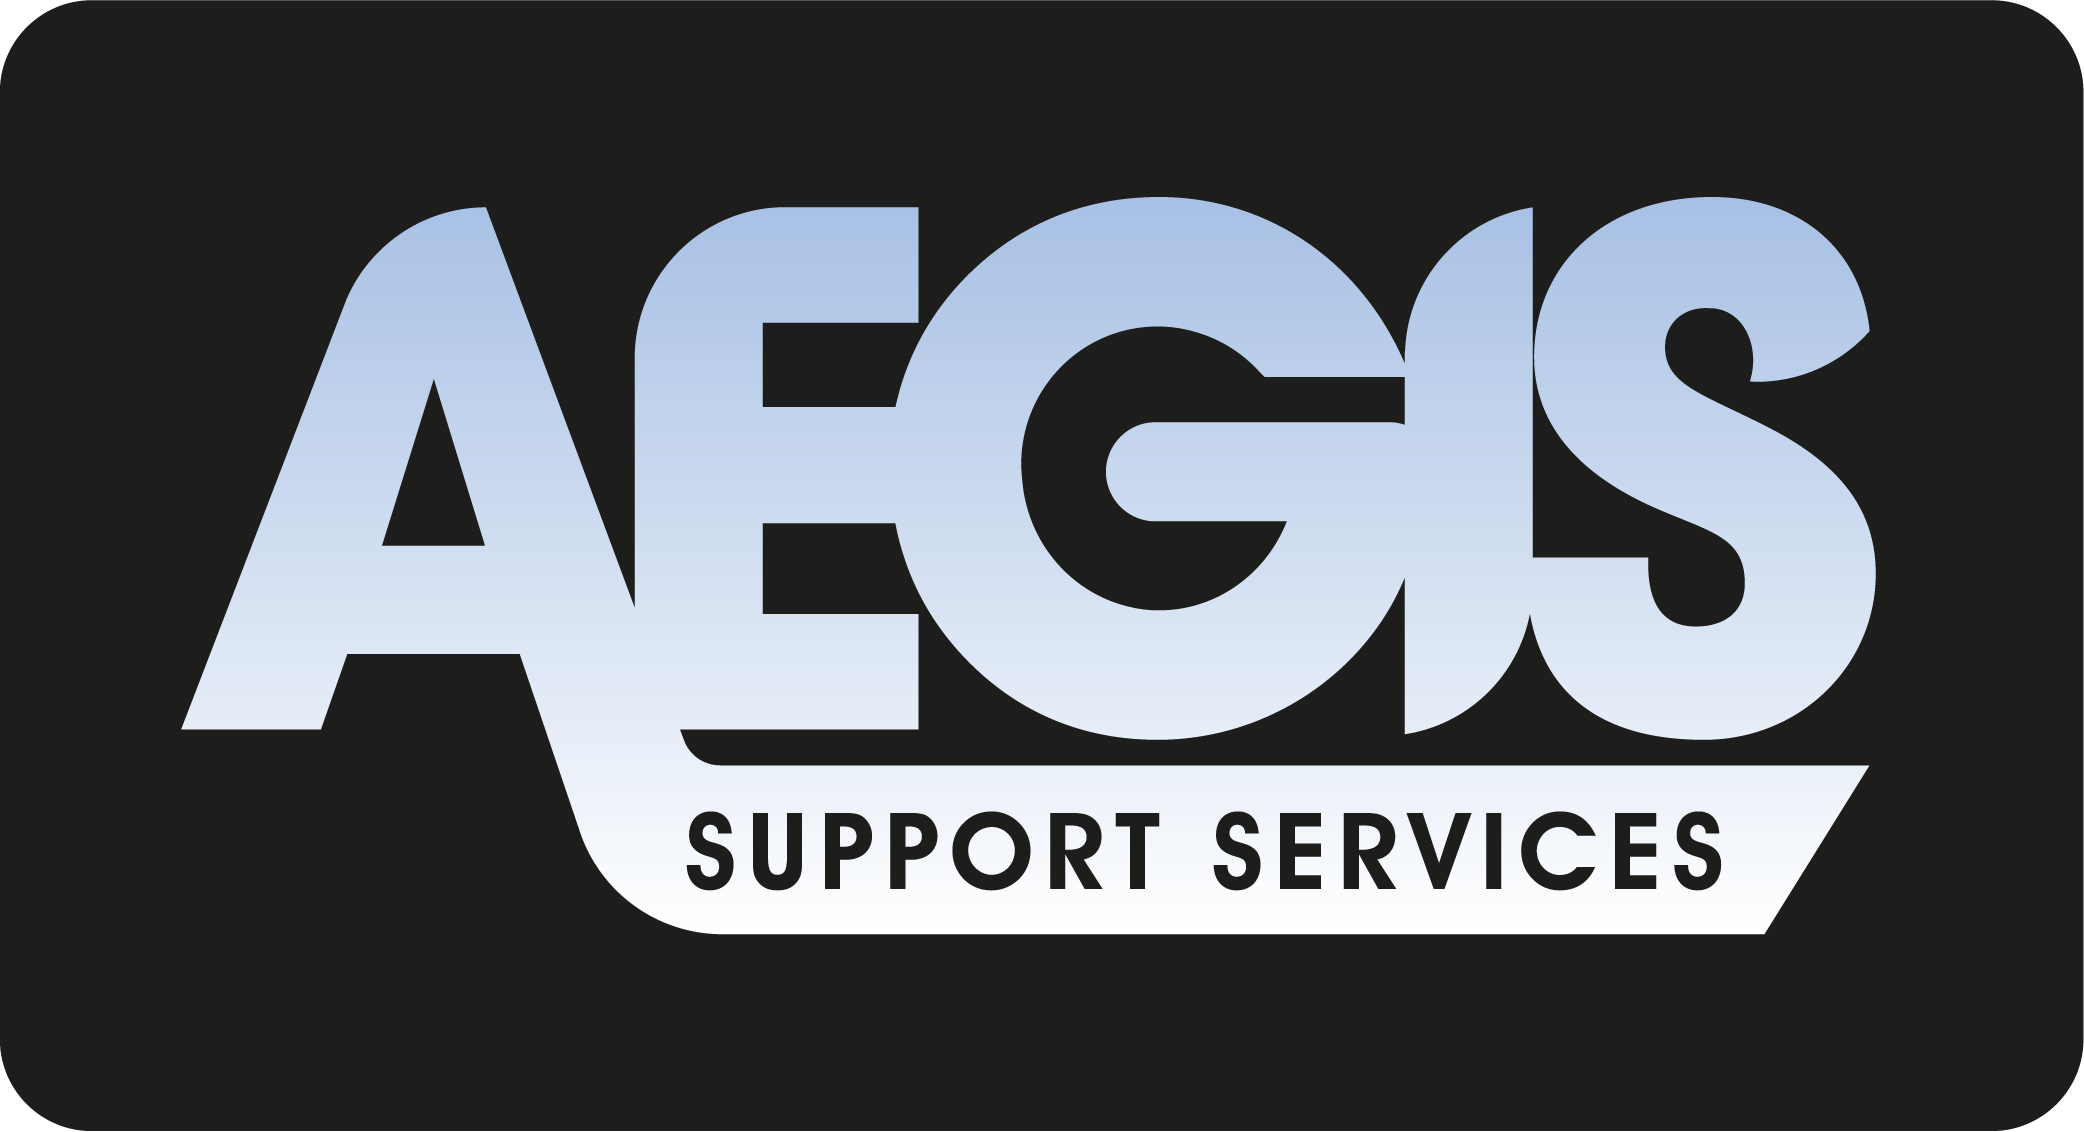 Aegis Support Services